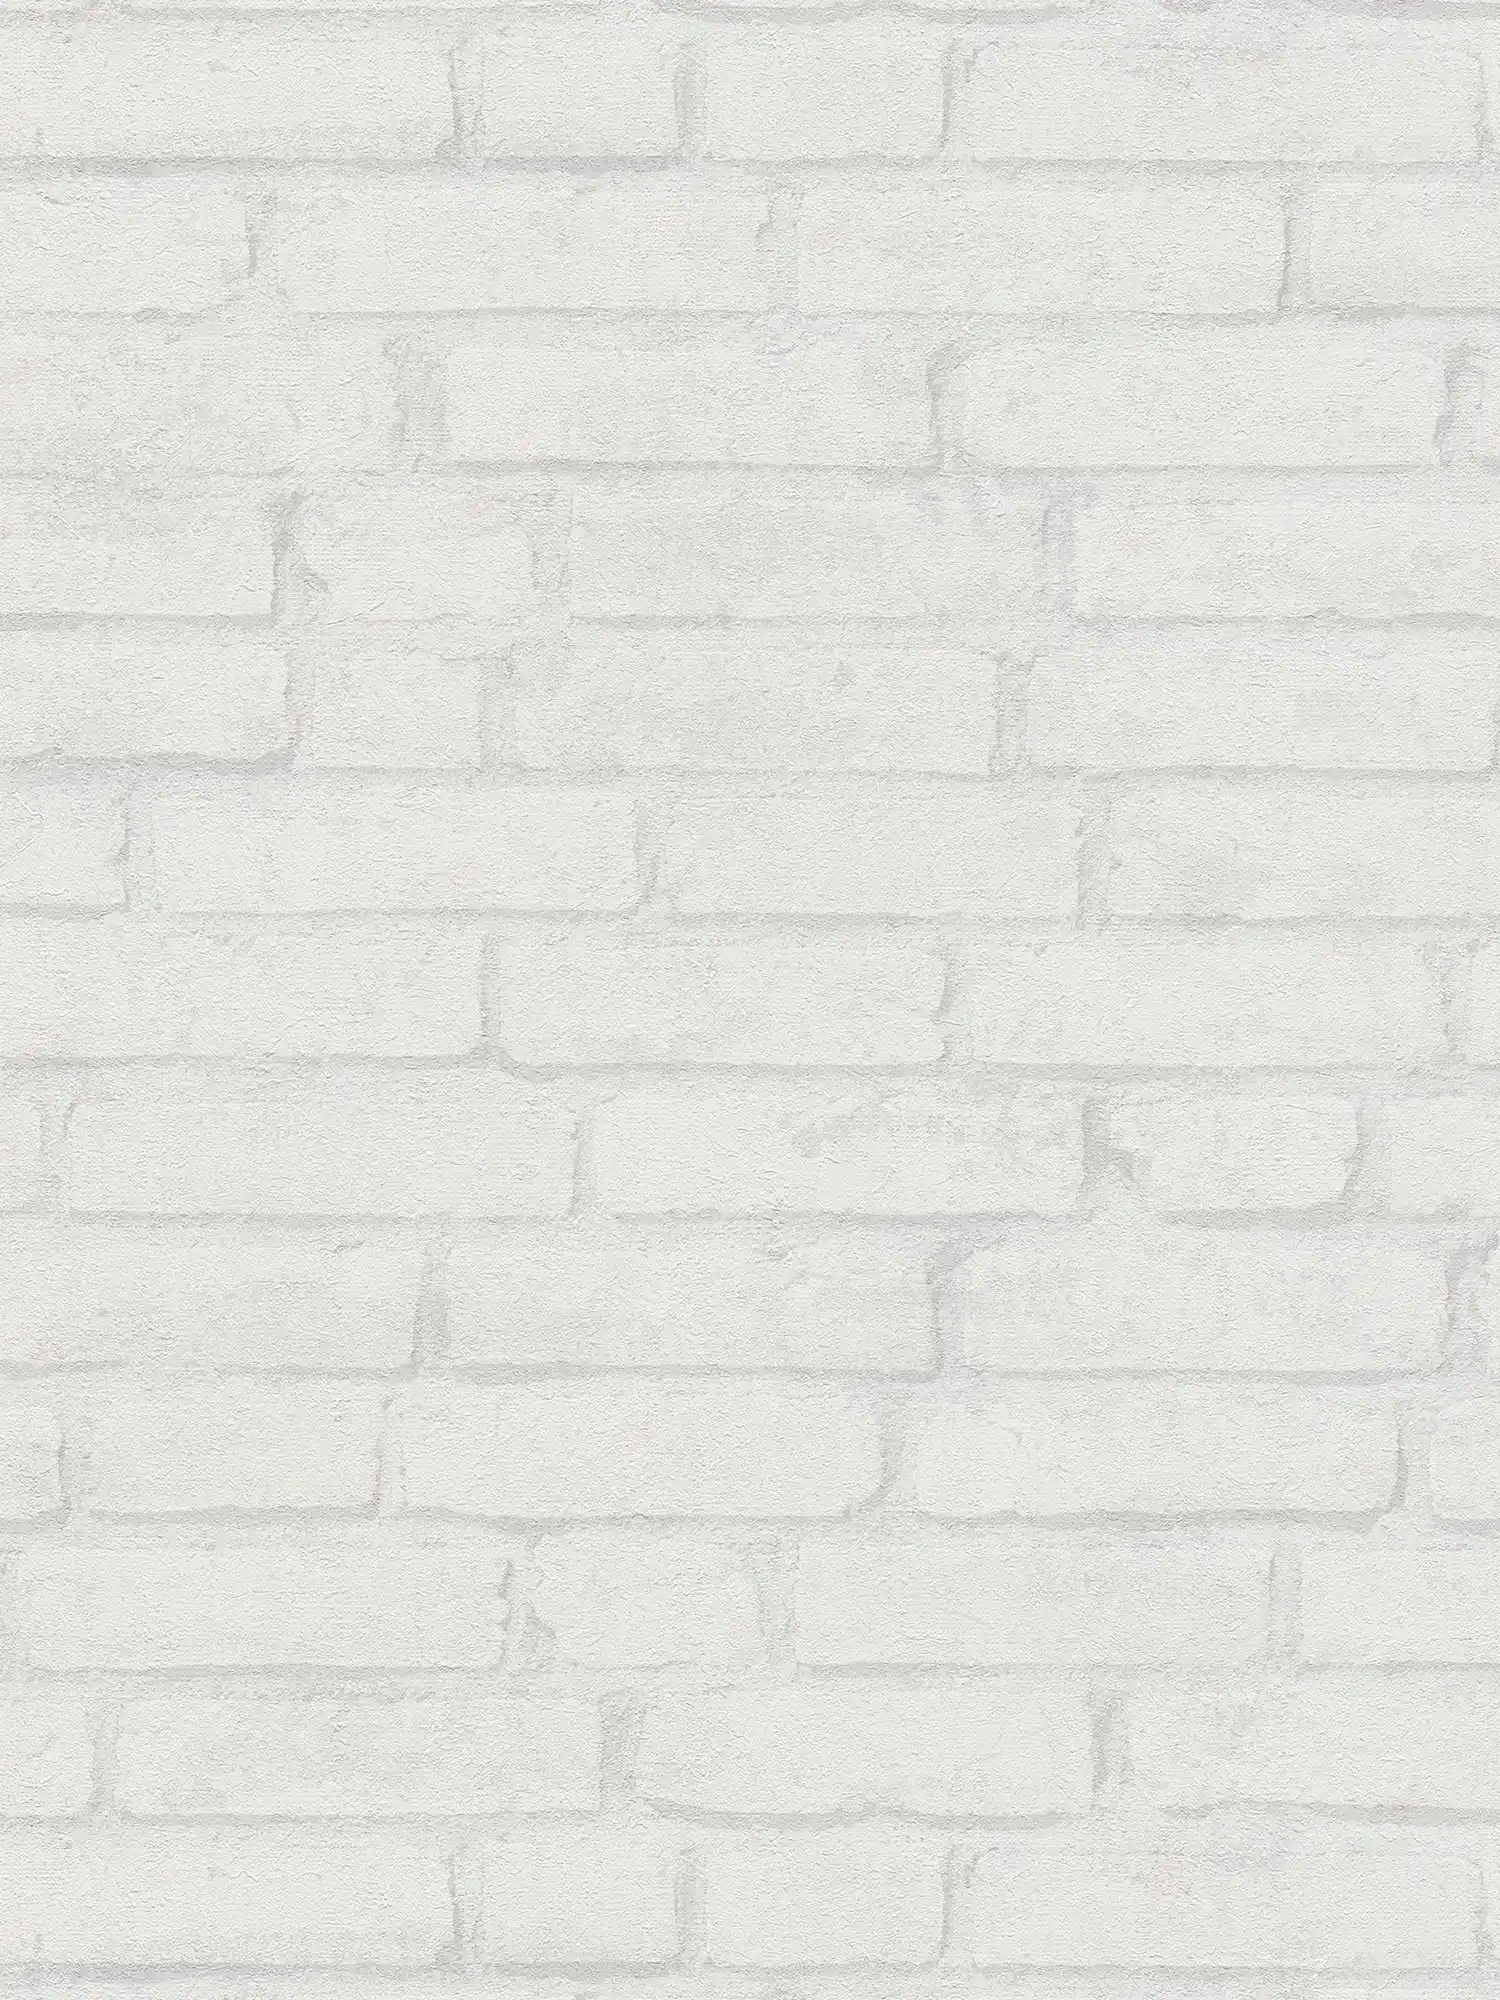 Carta da parati in pietra chiara con motivo a mattoni nel design industriale - bianco, grigio
